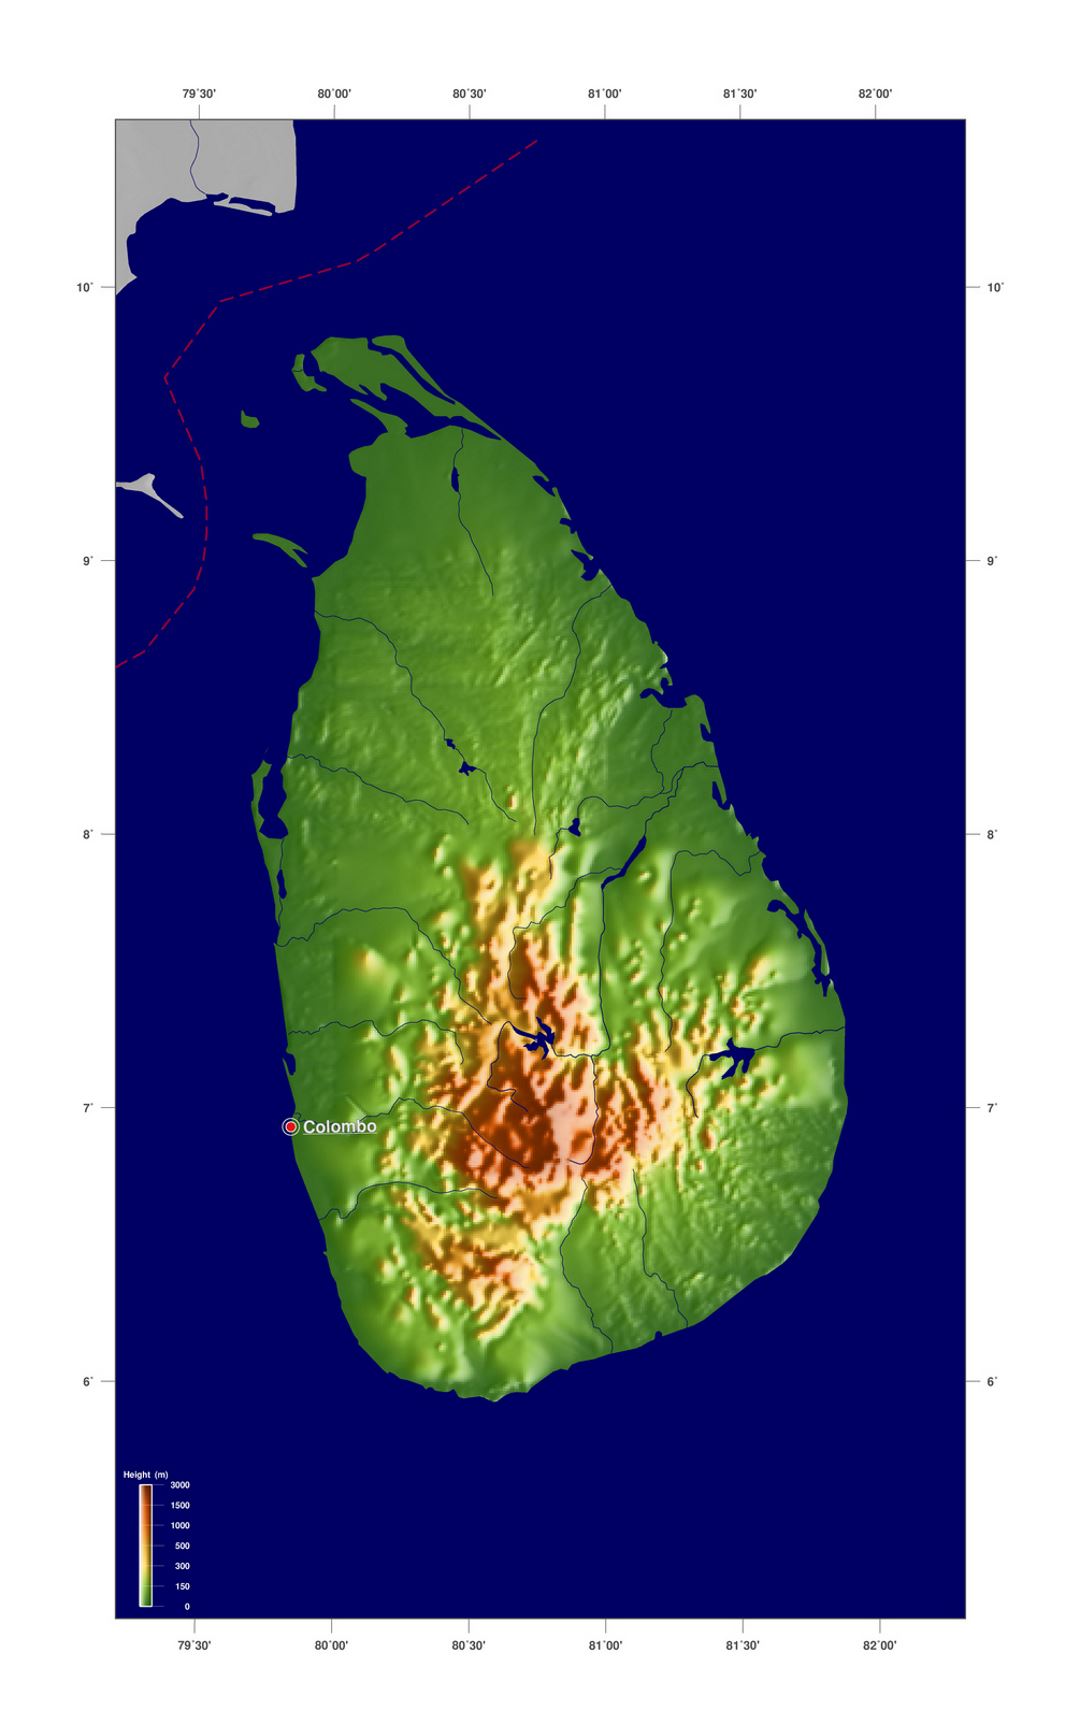 Large elevation map of Sri Lanka